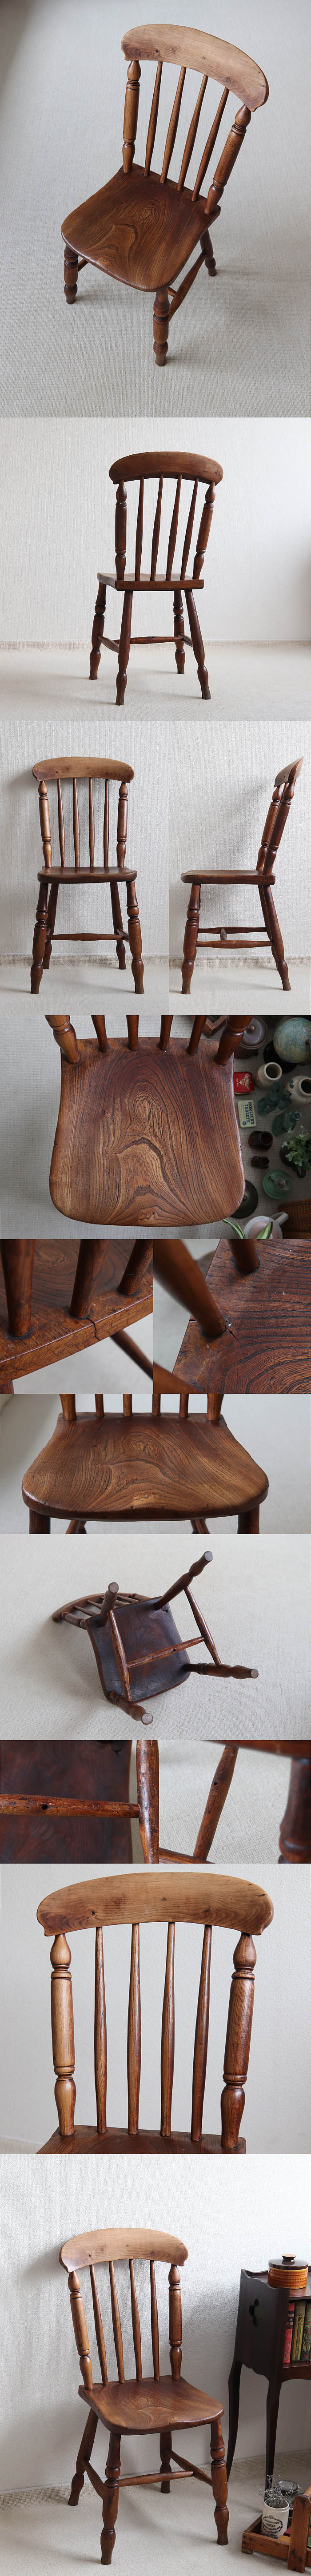 イギリス アンティーク キッチンチェア 木製椅子 カントリー 古木 店舗什器 家具「一枚板座面」T-984